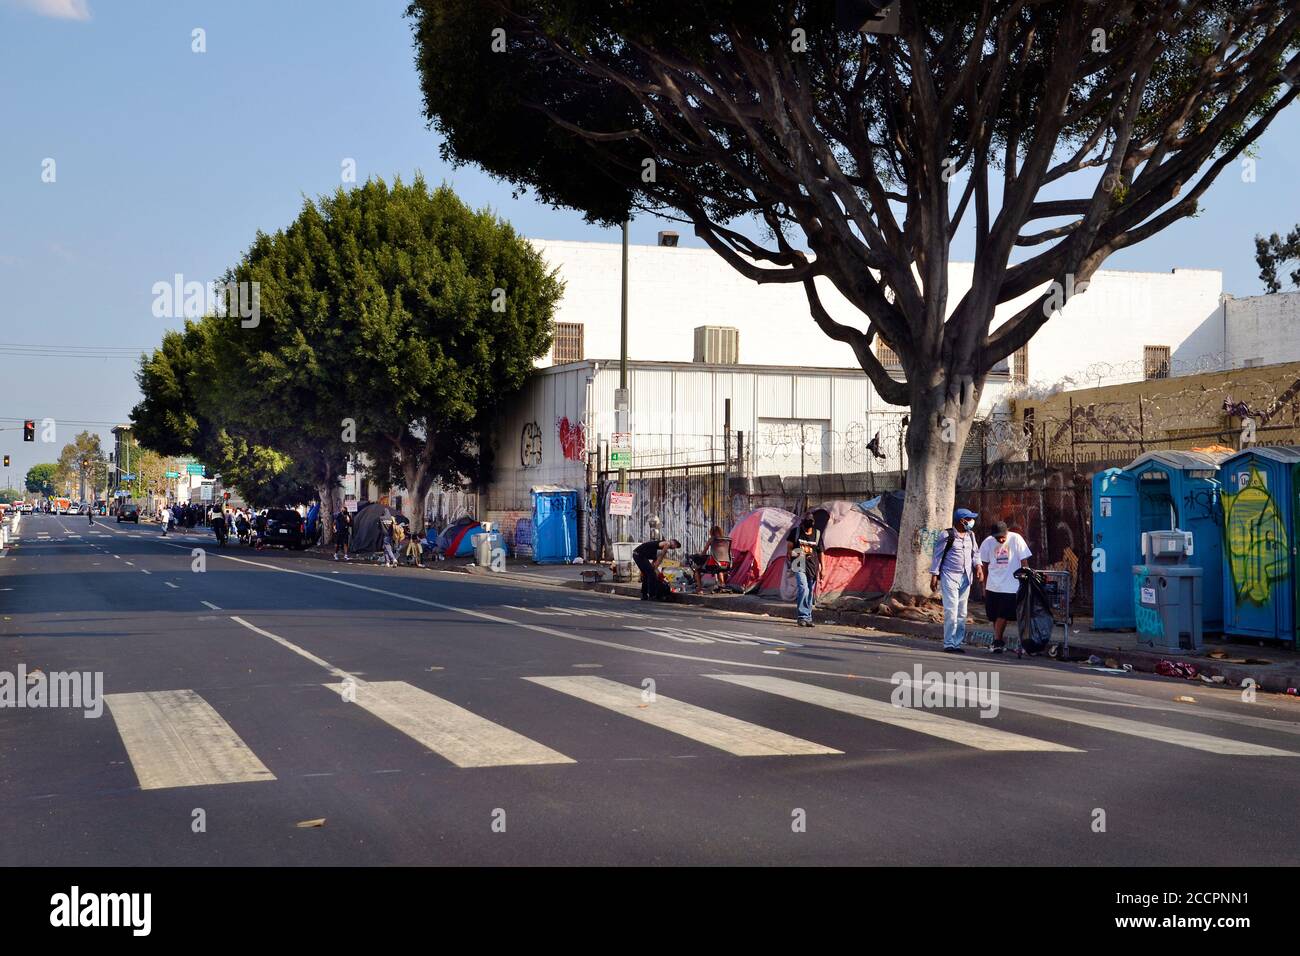 Los Angeles, CA, États-Unis - 22 août 2020 : les sans-abri non identifiés vivent dans des tentes et des abris d'urgence dans la rue à l'époque de la pande Covid 19 Banque D'Images